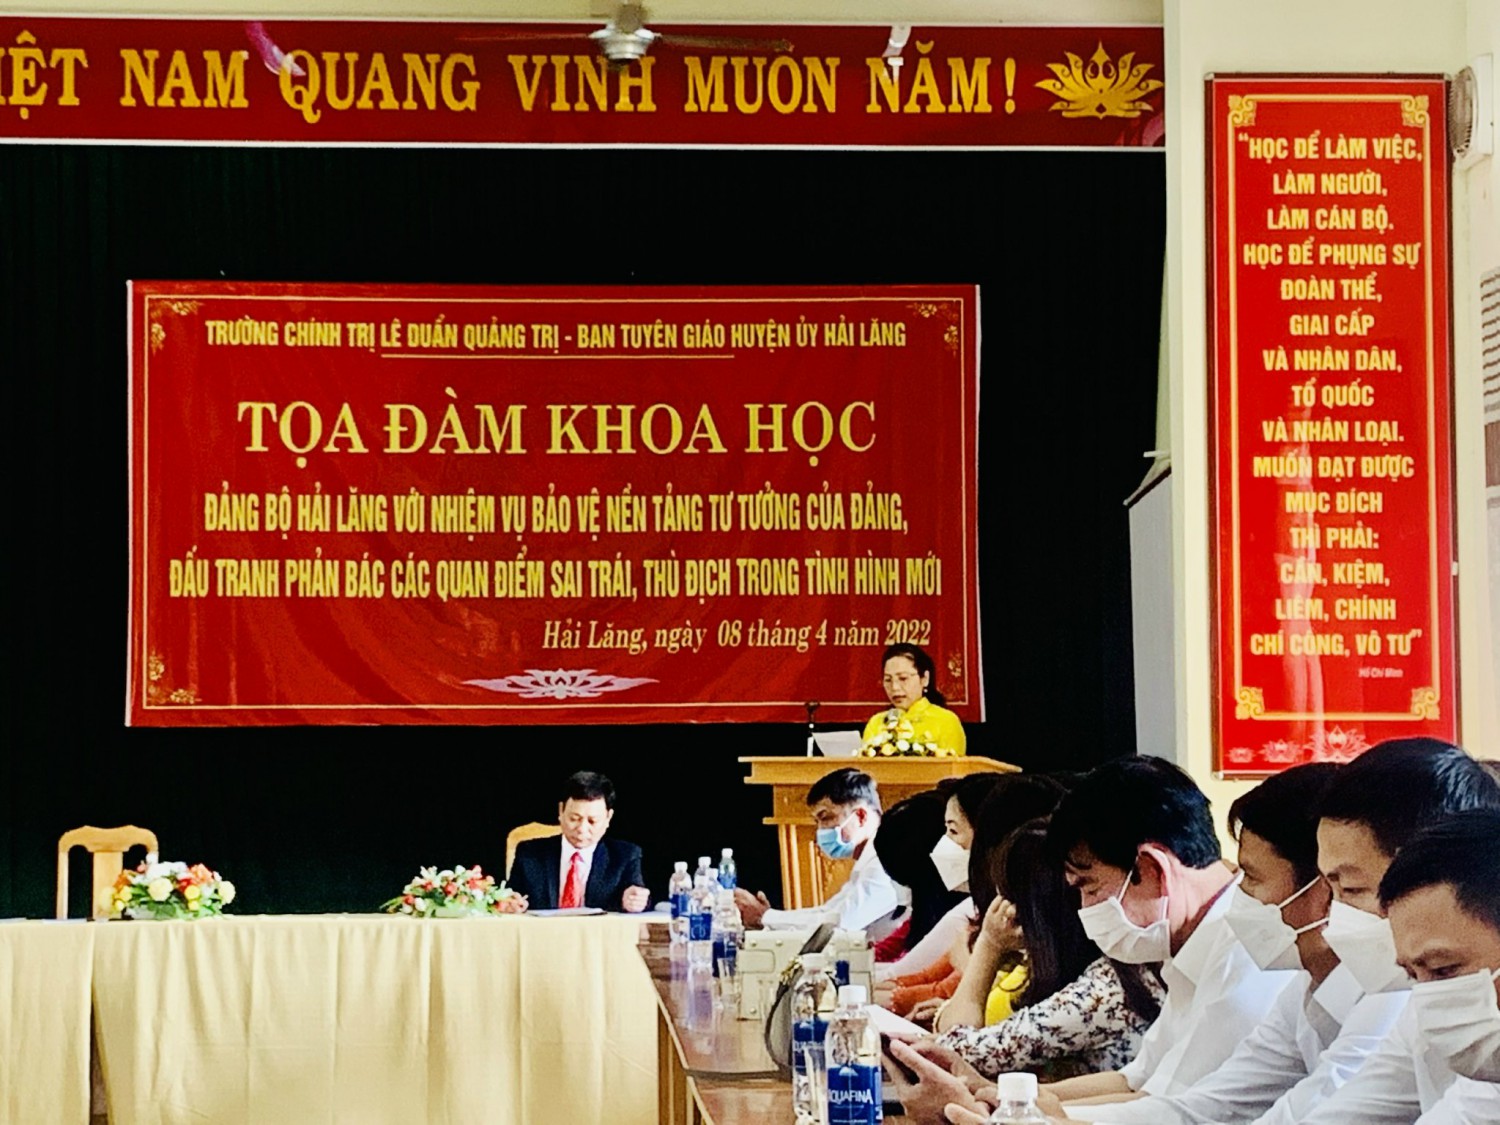 ThS. Ngô Thị Thu Hà, Phó Bí thư Đảng uỷ - Phó Hiệu trưởng Trường chính trị Lê Duẩnphát biểu chỉ đạo tại buổi Tọa đàm